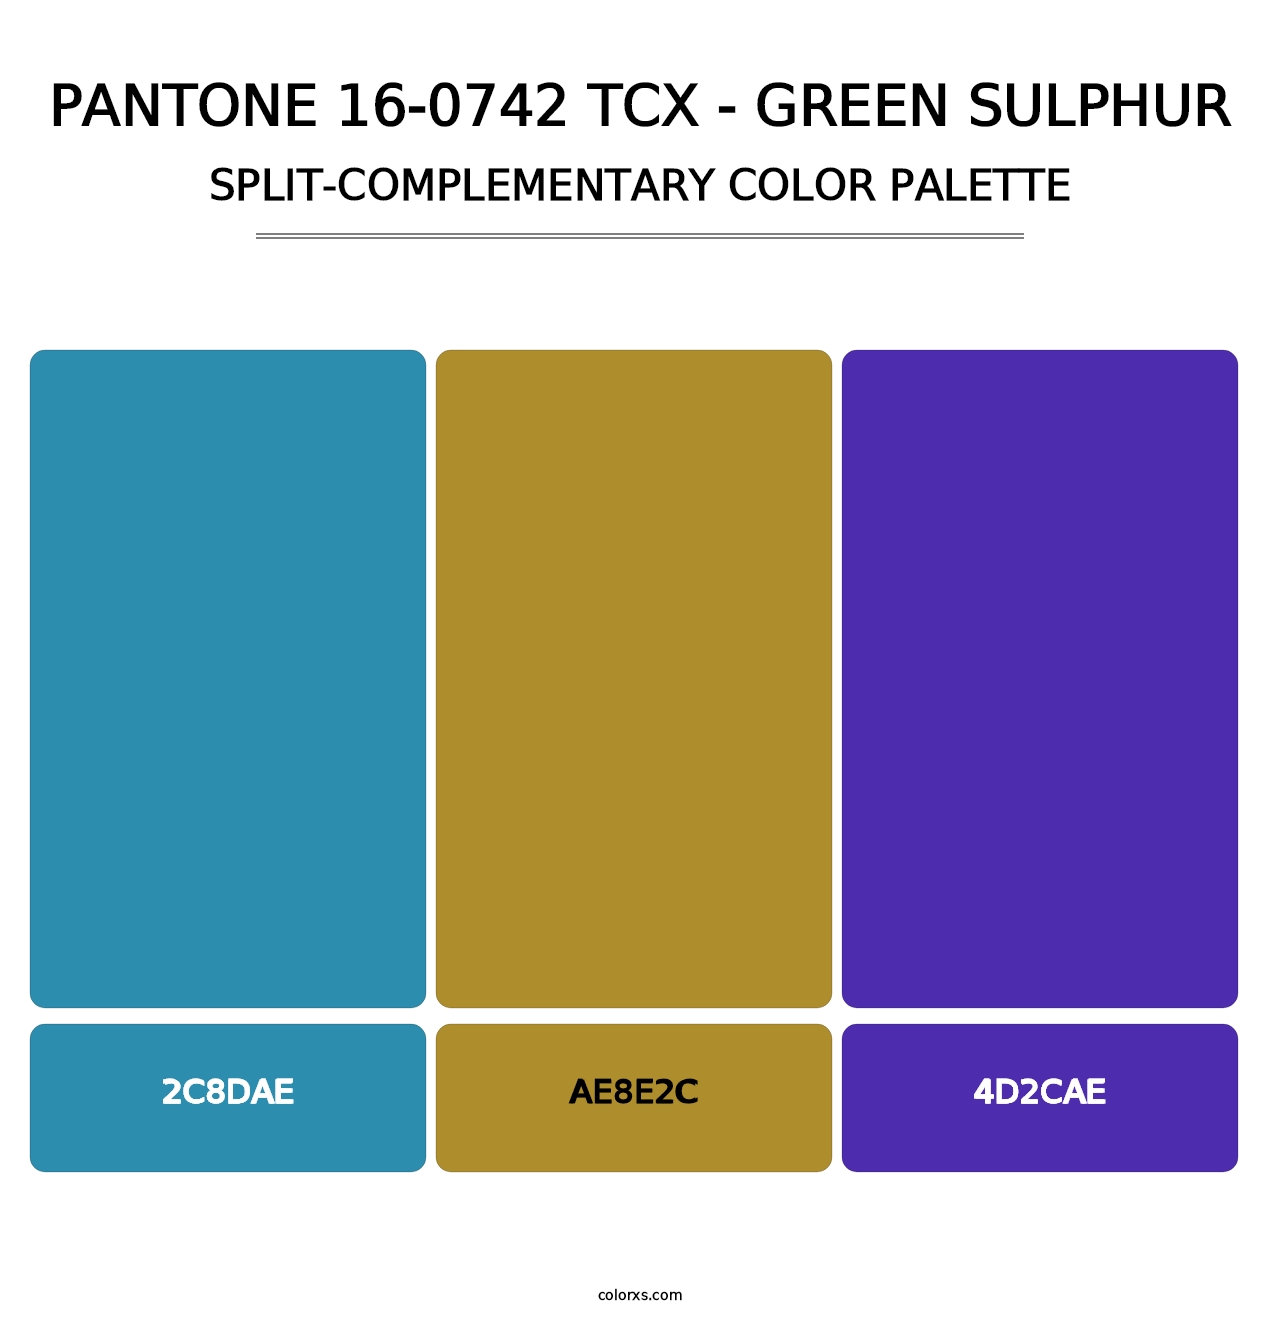 PANTONE 16-0742 TCX - Green Sulphur - Split-Complementary Color Palette